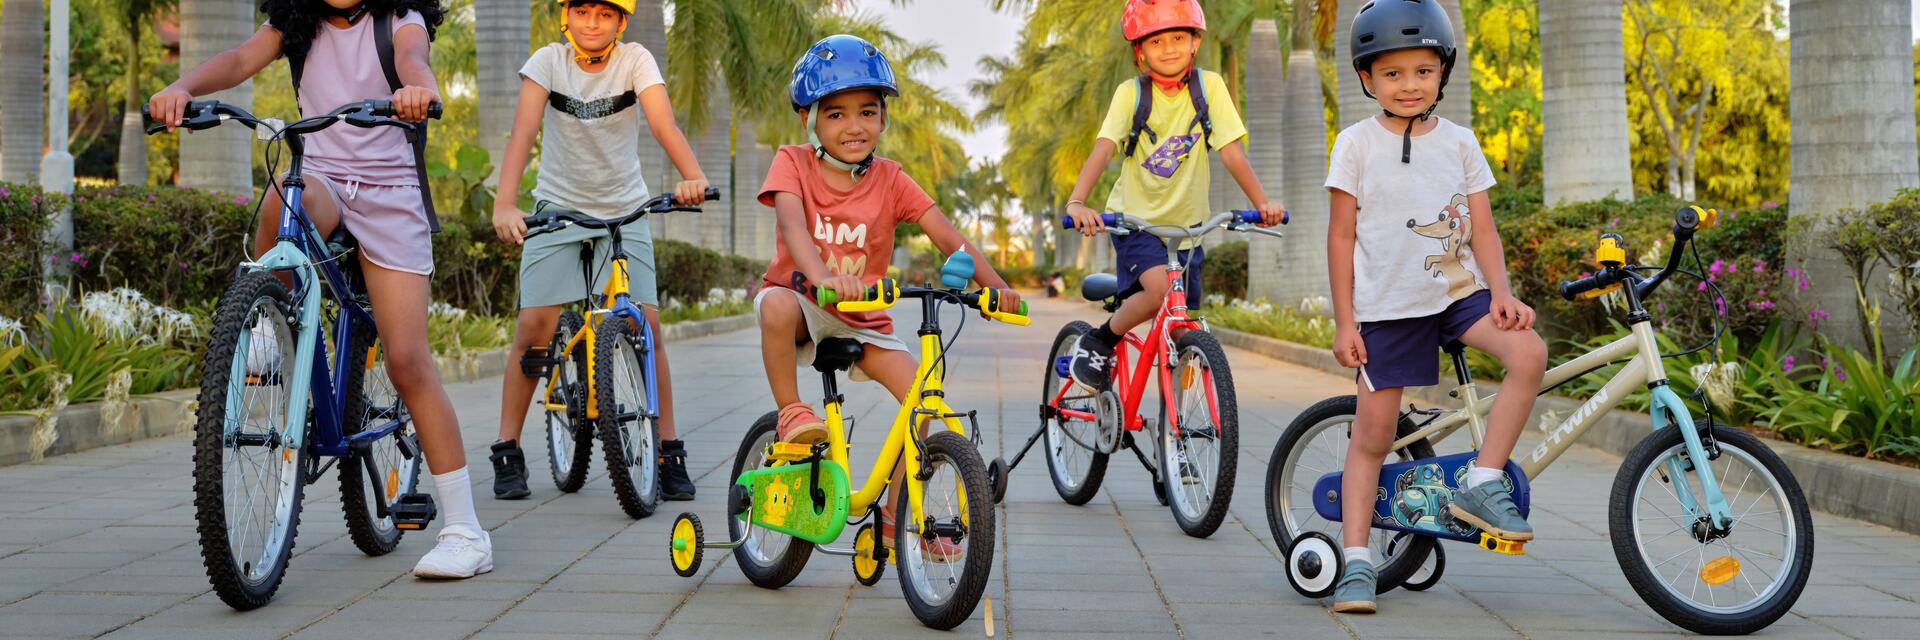 Grupa dzieci w kaskach rowerowych uprawiająca aktywność fizyczną jeżdżąc na rowerach